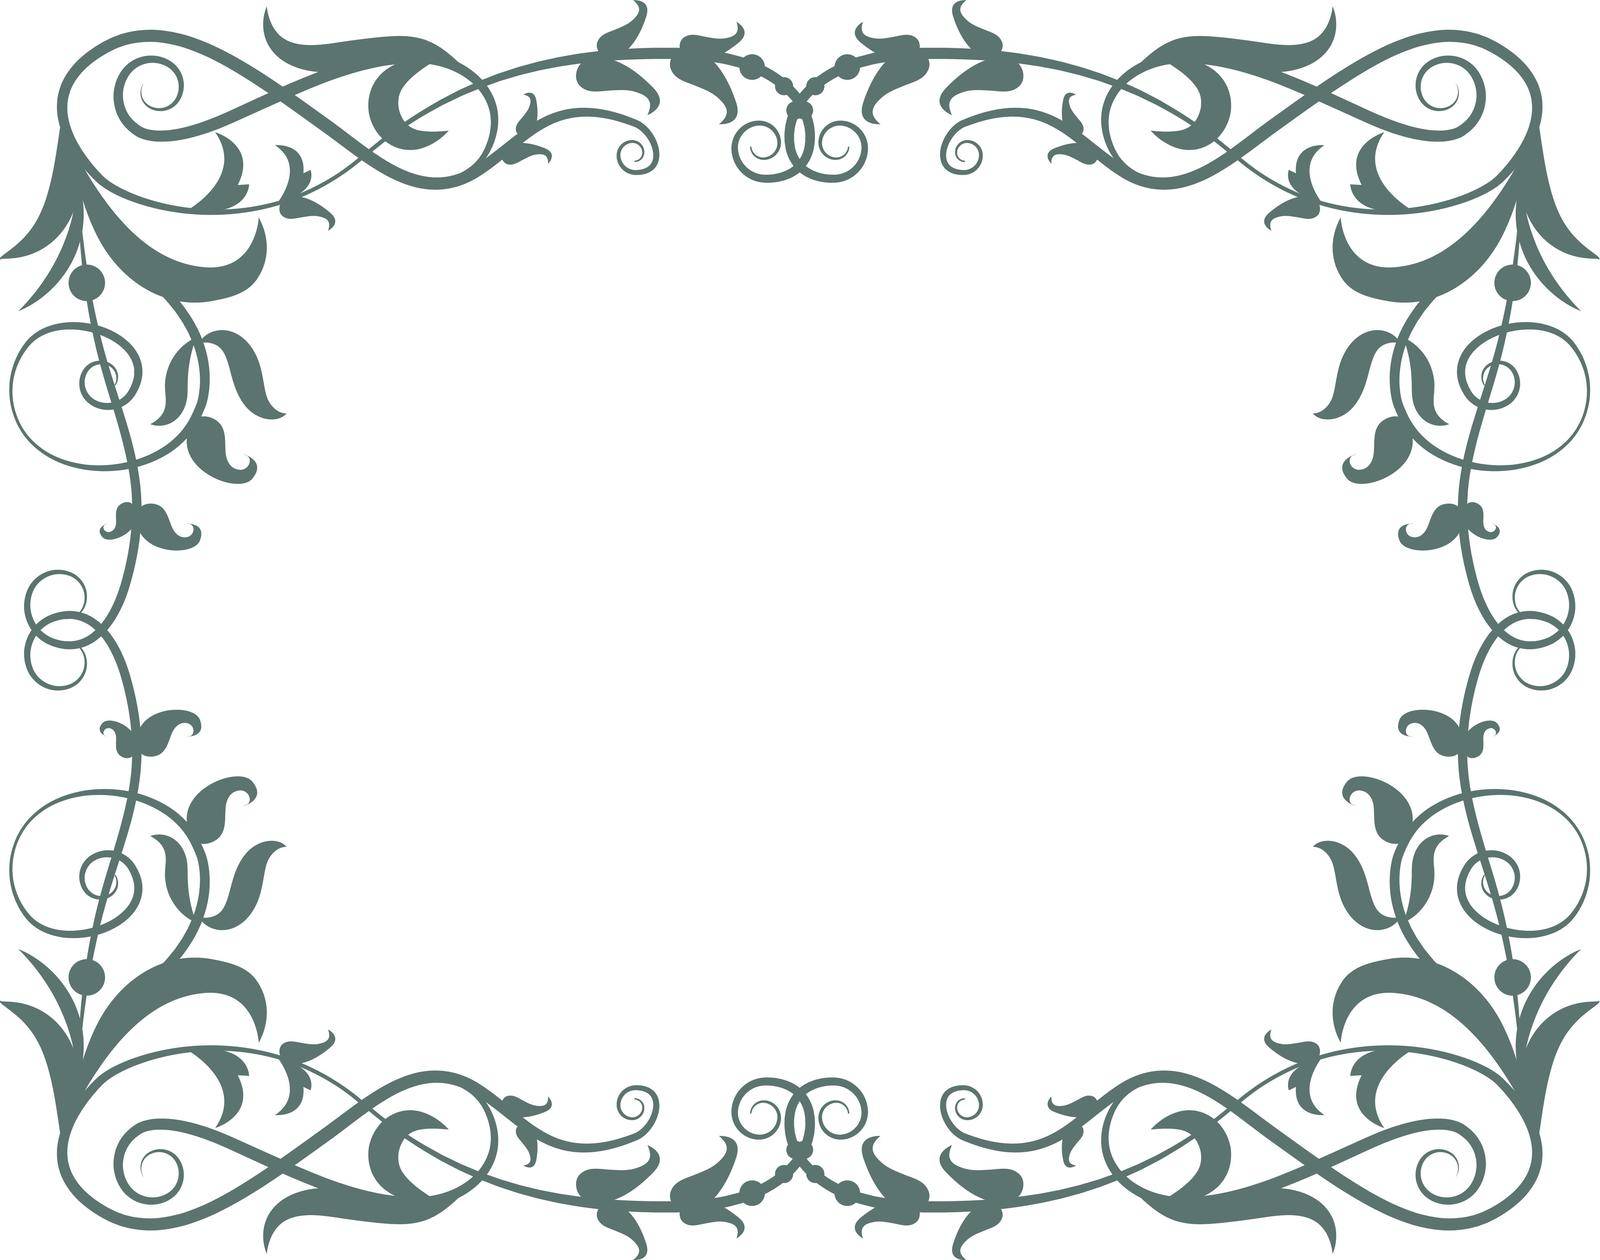 Filigree frame. Retro baroque border. Decorative rectangle isolated on white background